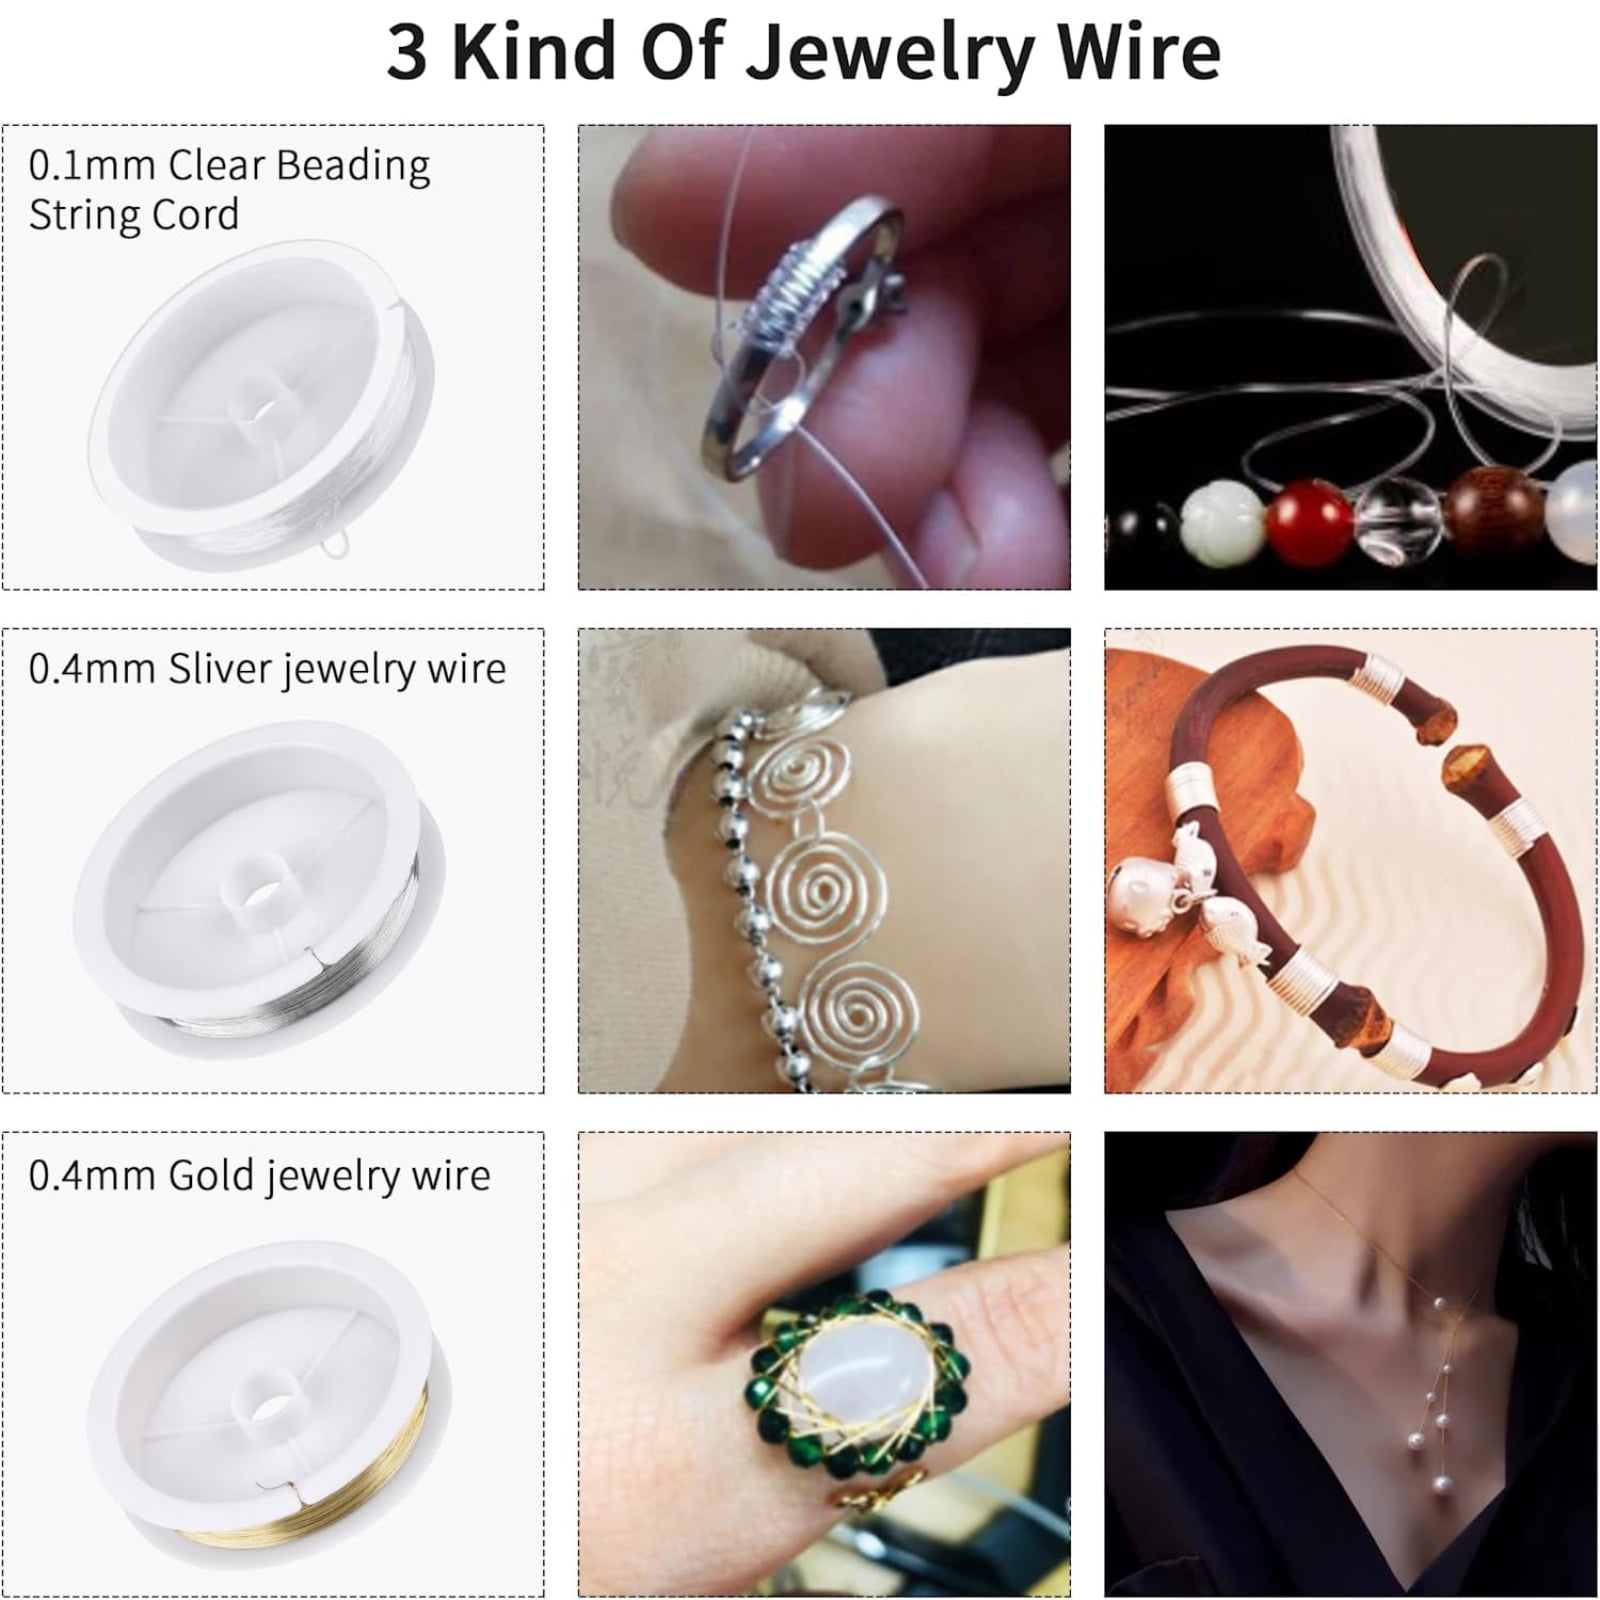 Jewelry Repair Kit, EEEkit Jewelry Finding Kit, Earring Making Supply,  Jewelry Making Supplies, Jewelry Tools, Jewelry Wire, Wire Wrapping Tool  Kits, Beading Supplies, Bracelet Jewelry Making Kit 